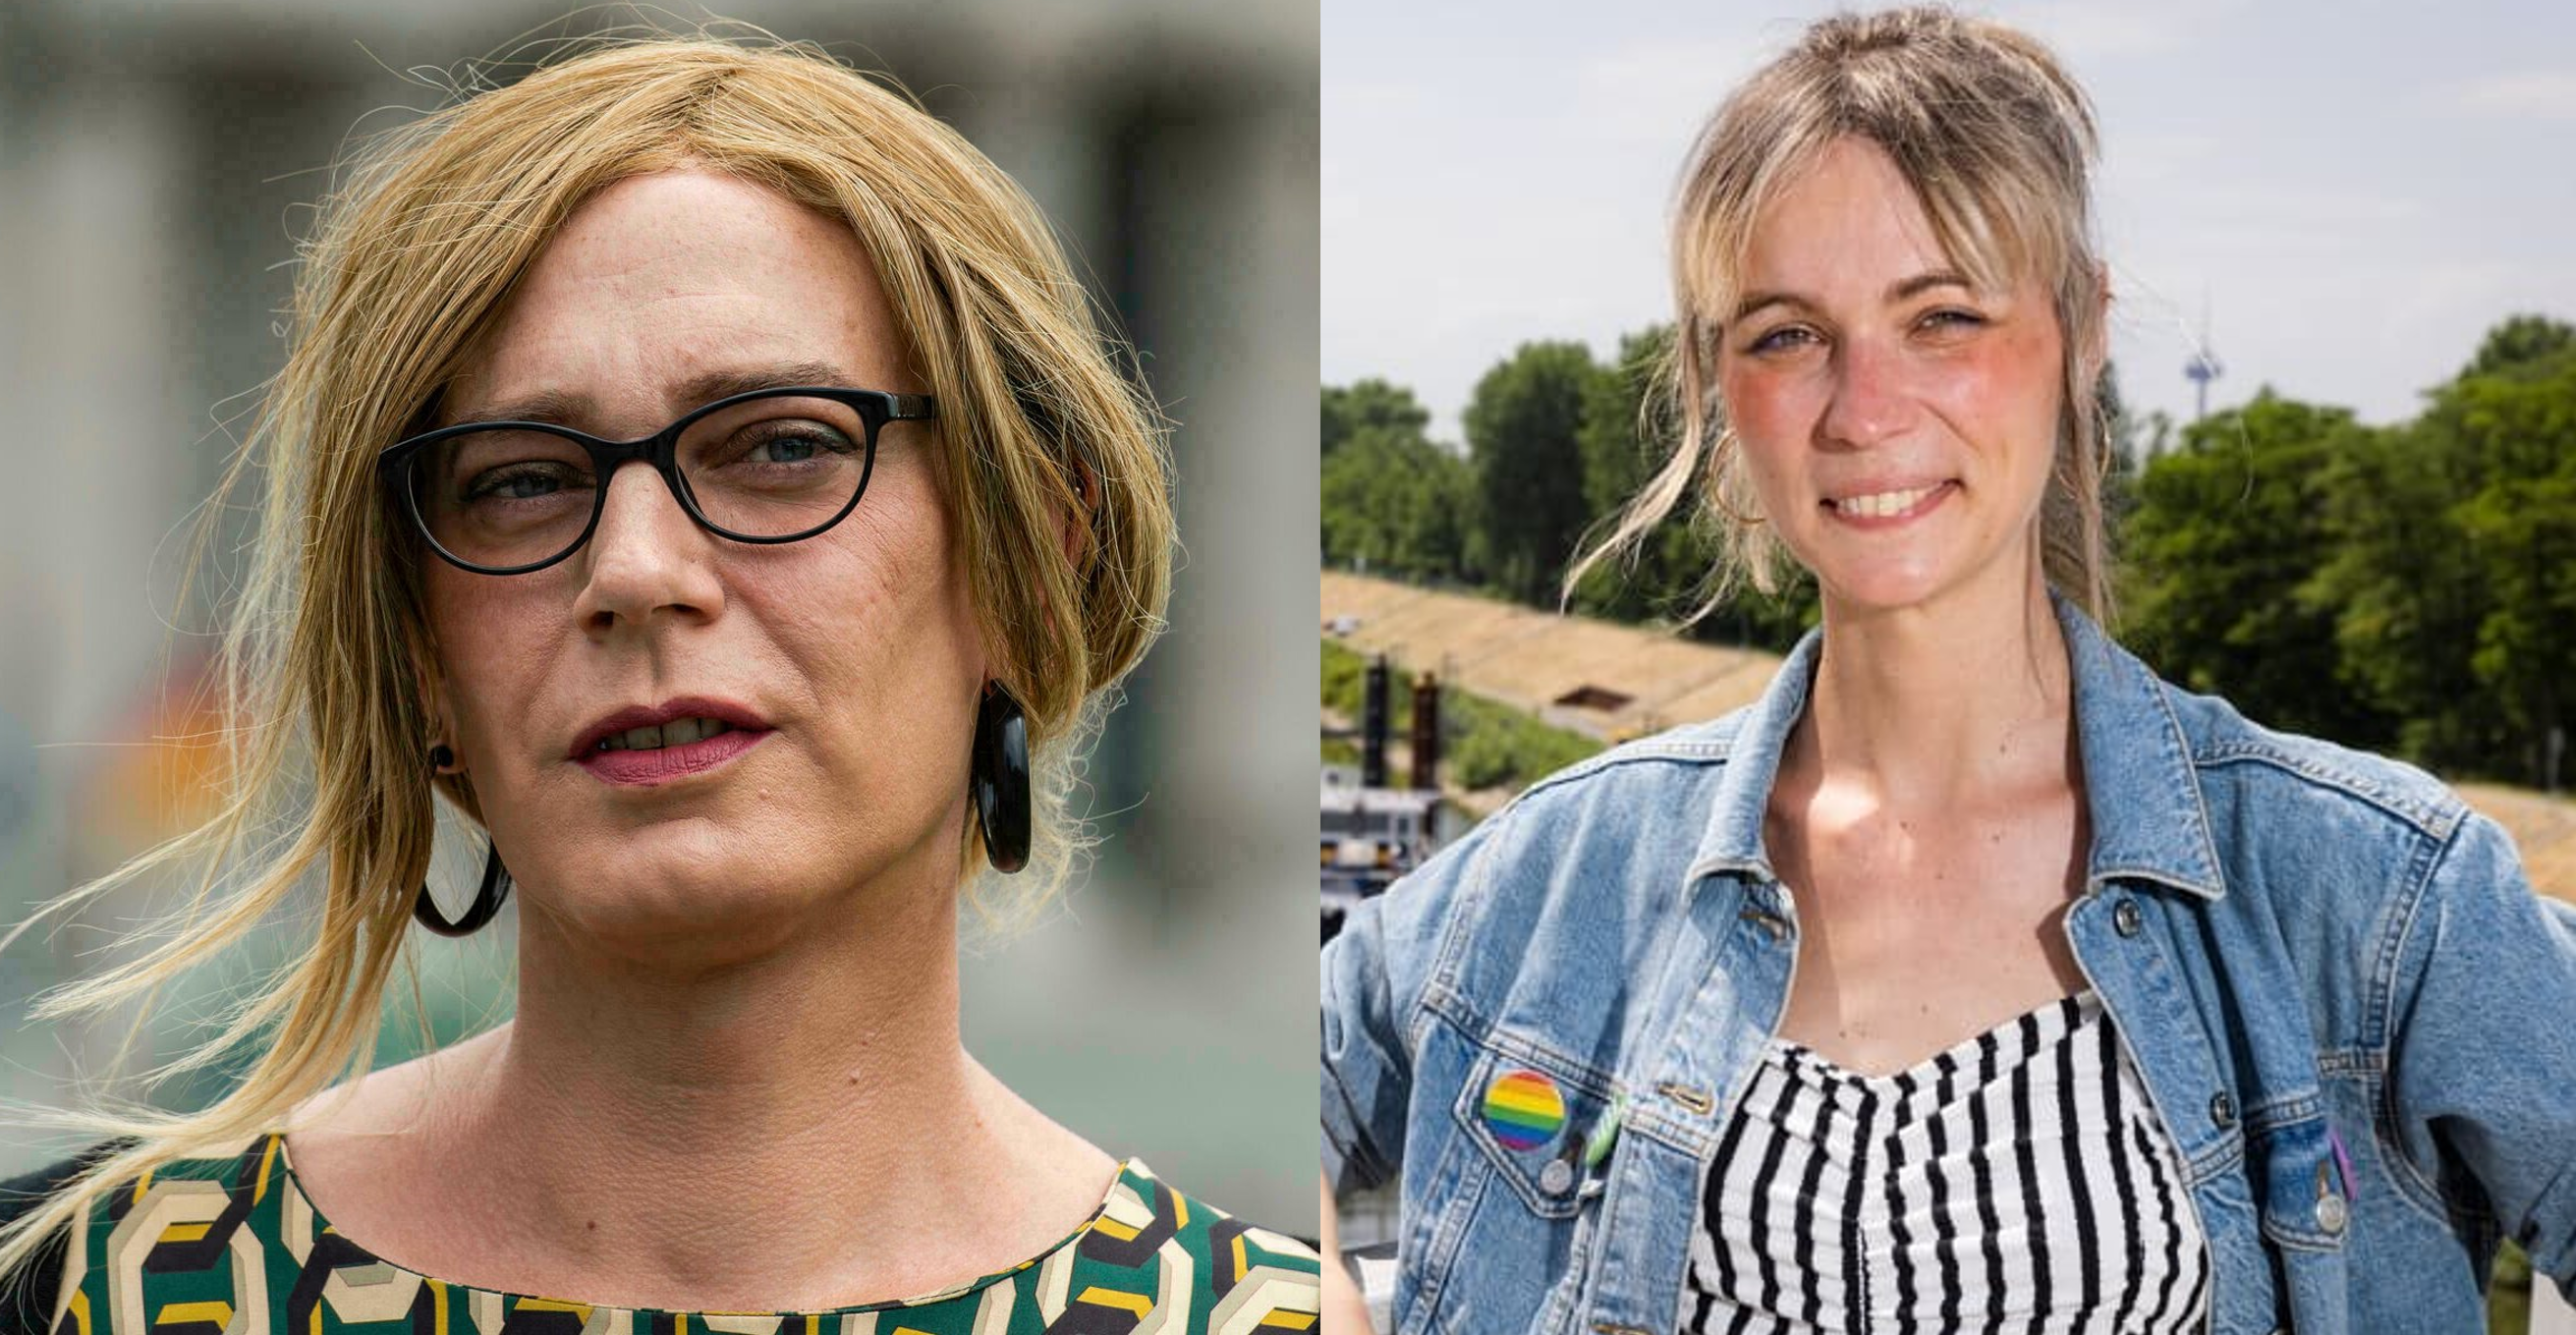 Două femei transgender fac parte din Parlamentul nou format al Germaniei. „O victorie istorică”